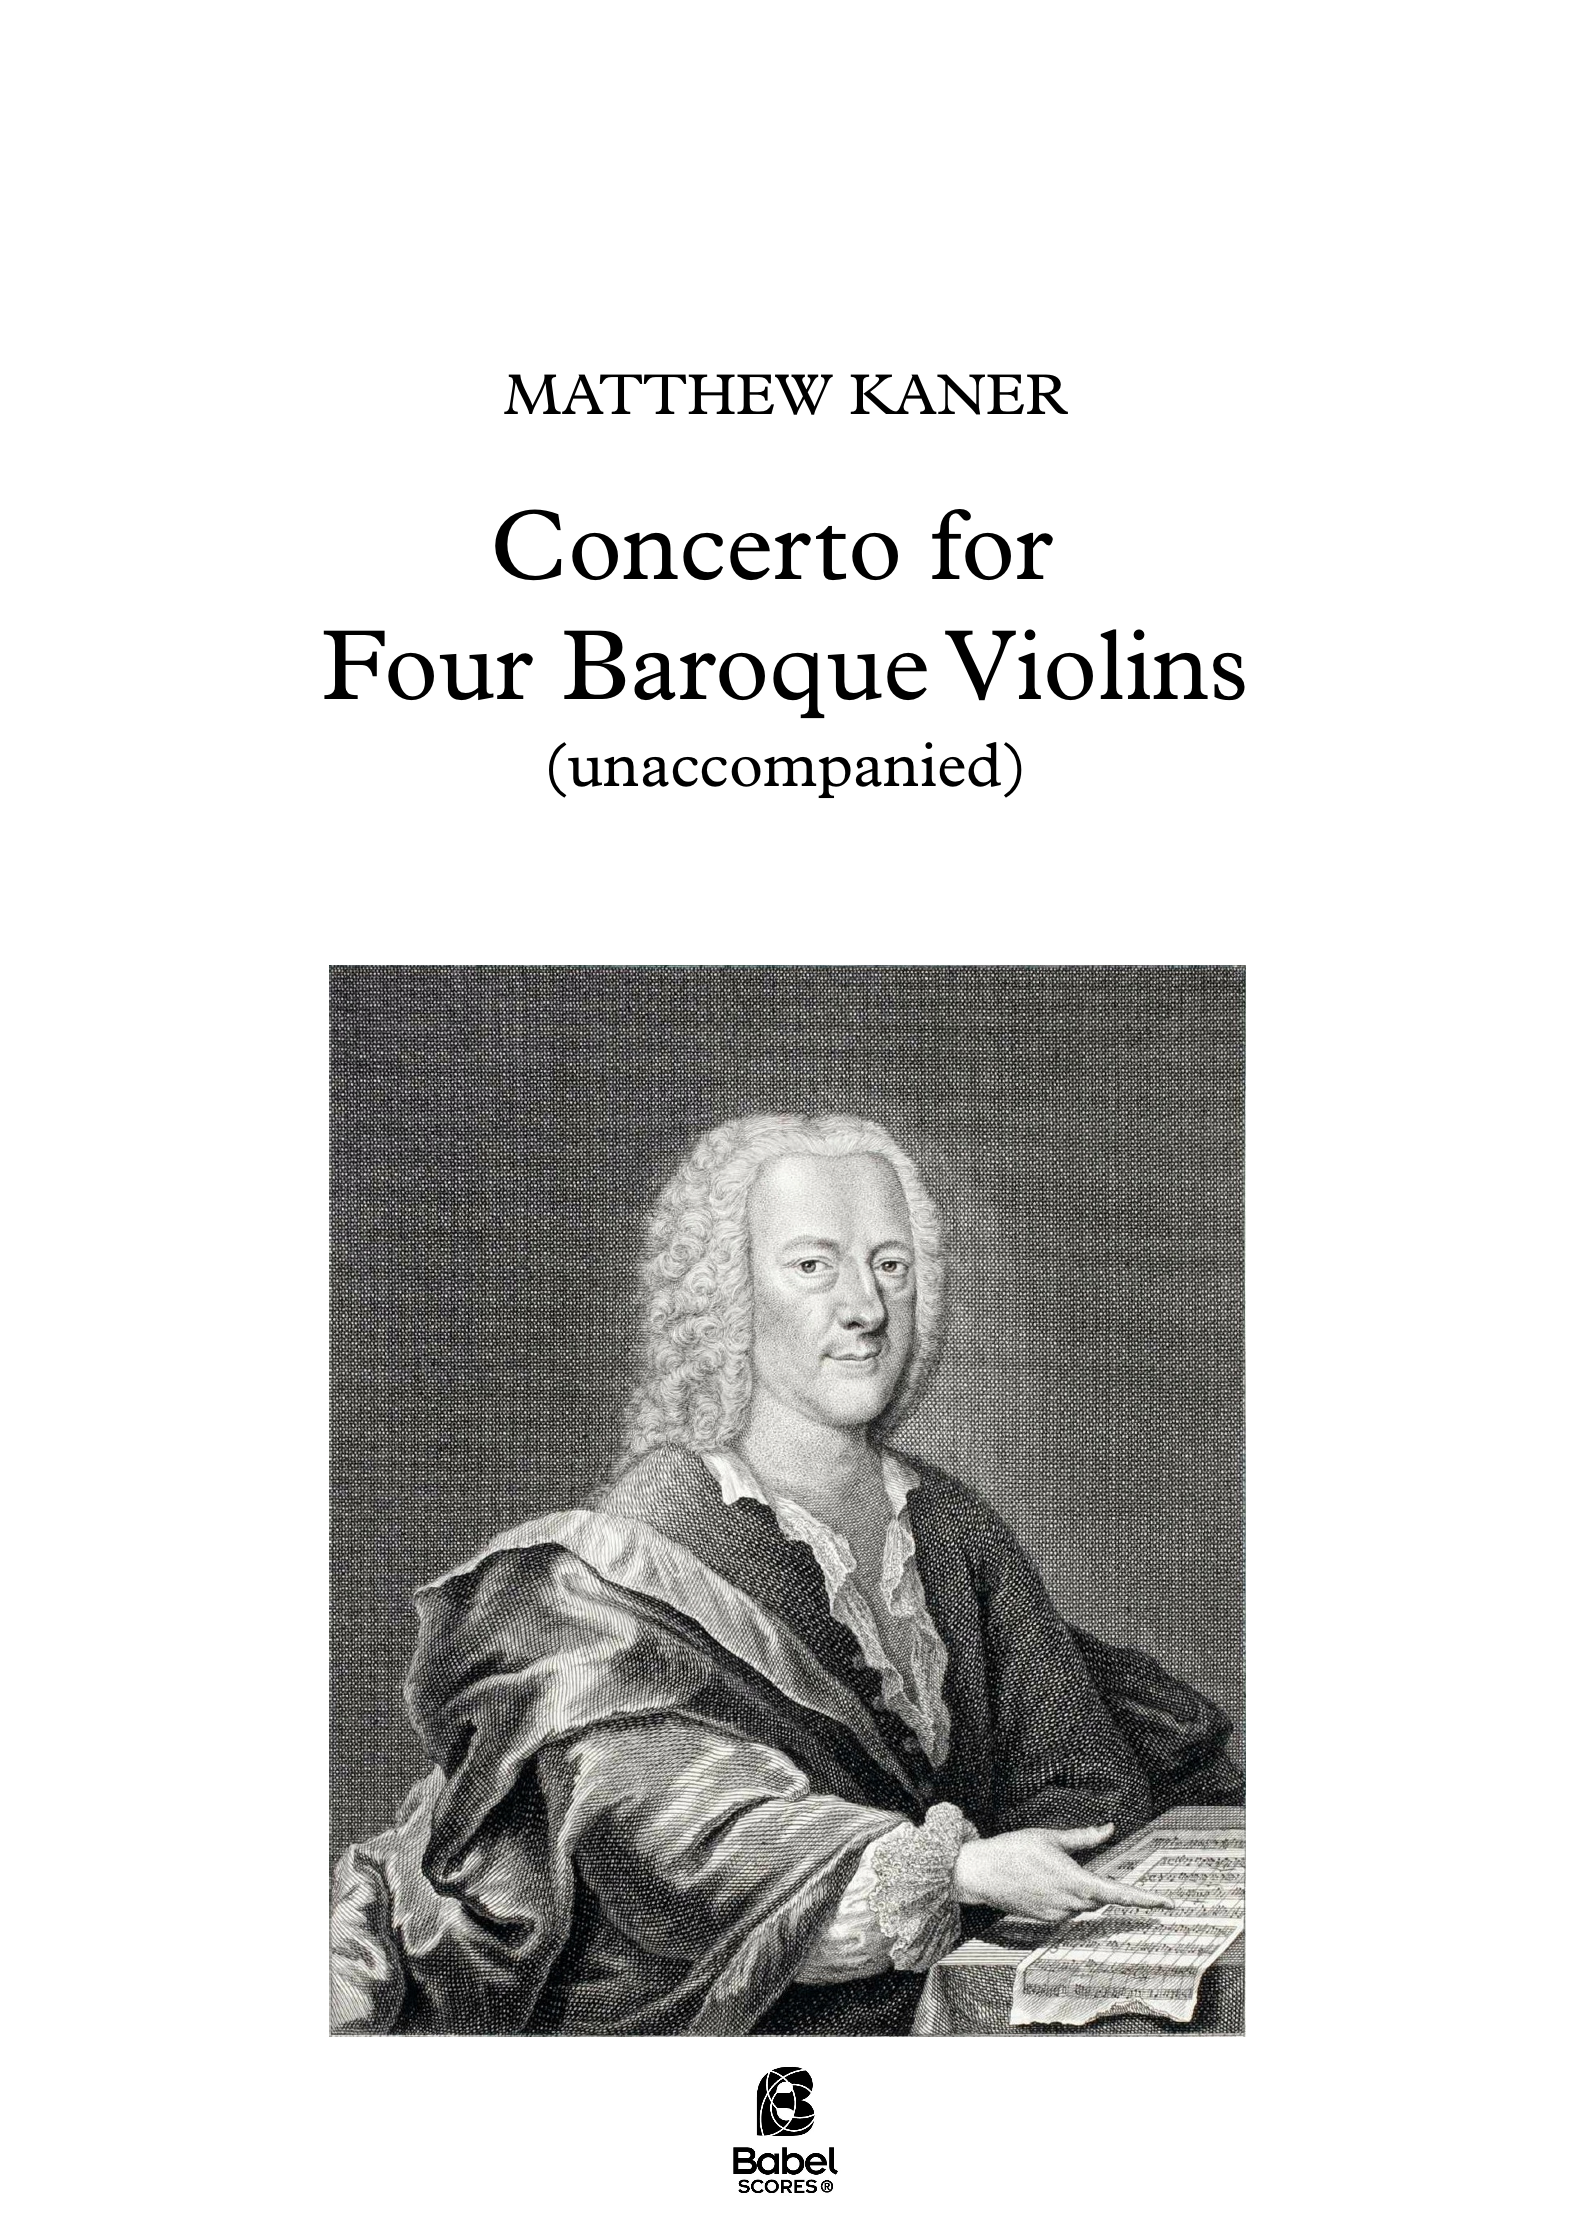 Concerto for Four Baroque Violins A4 z 2 17 585